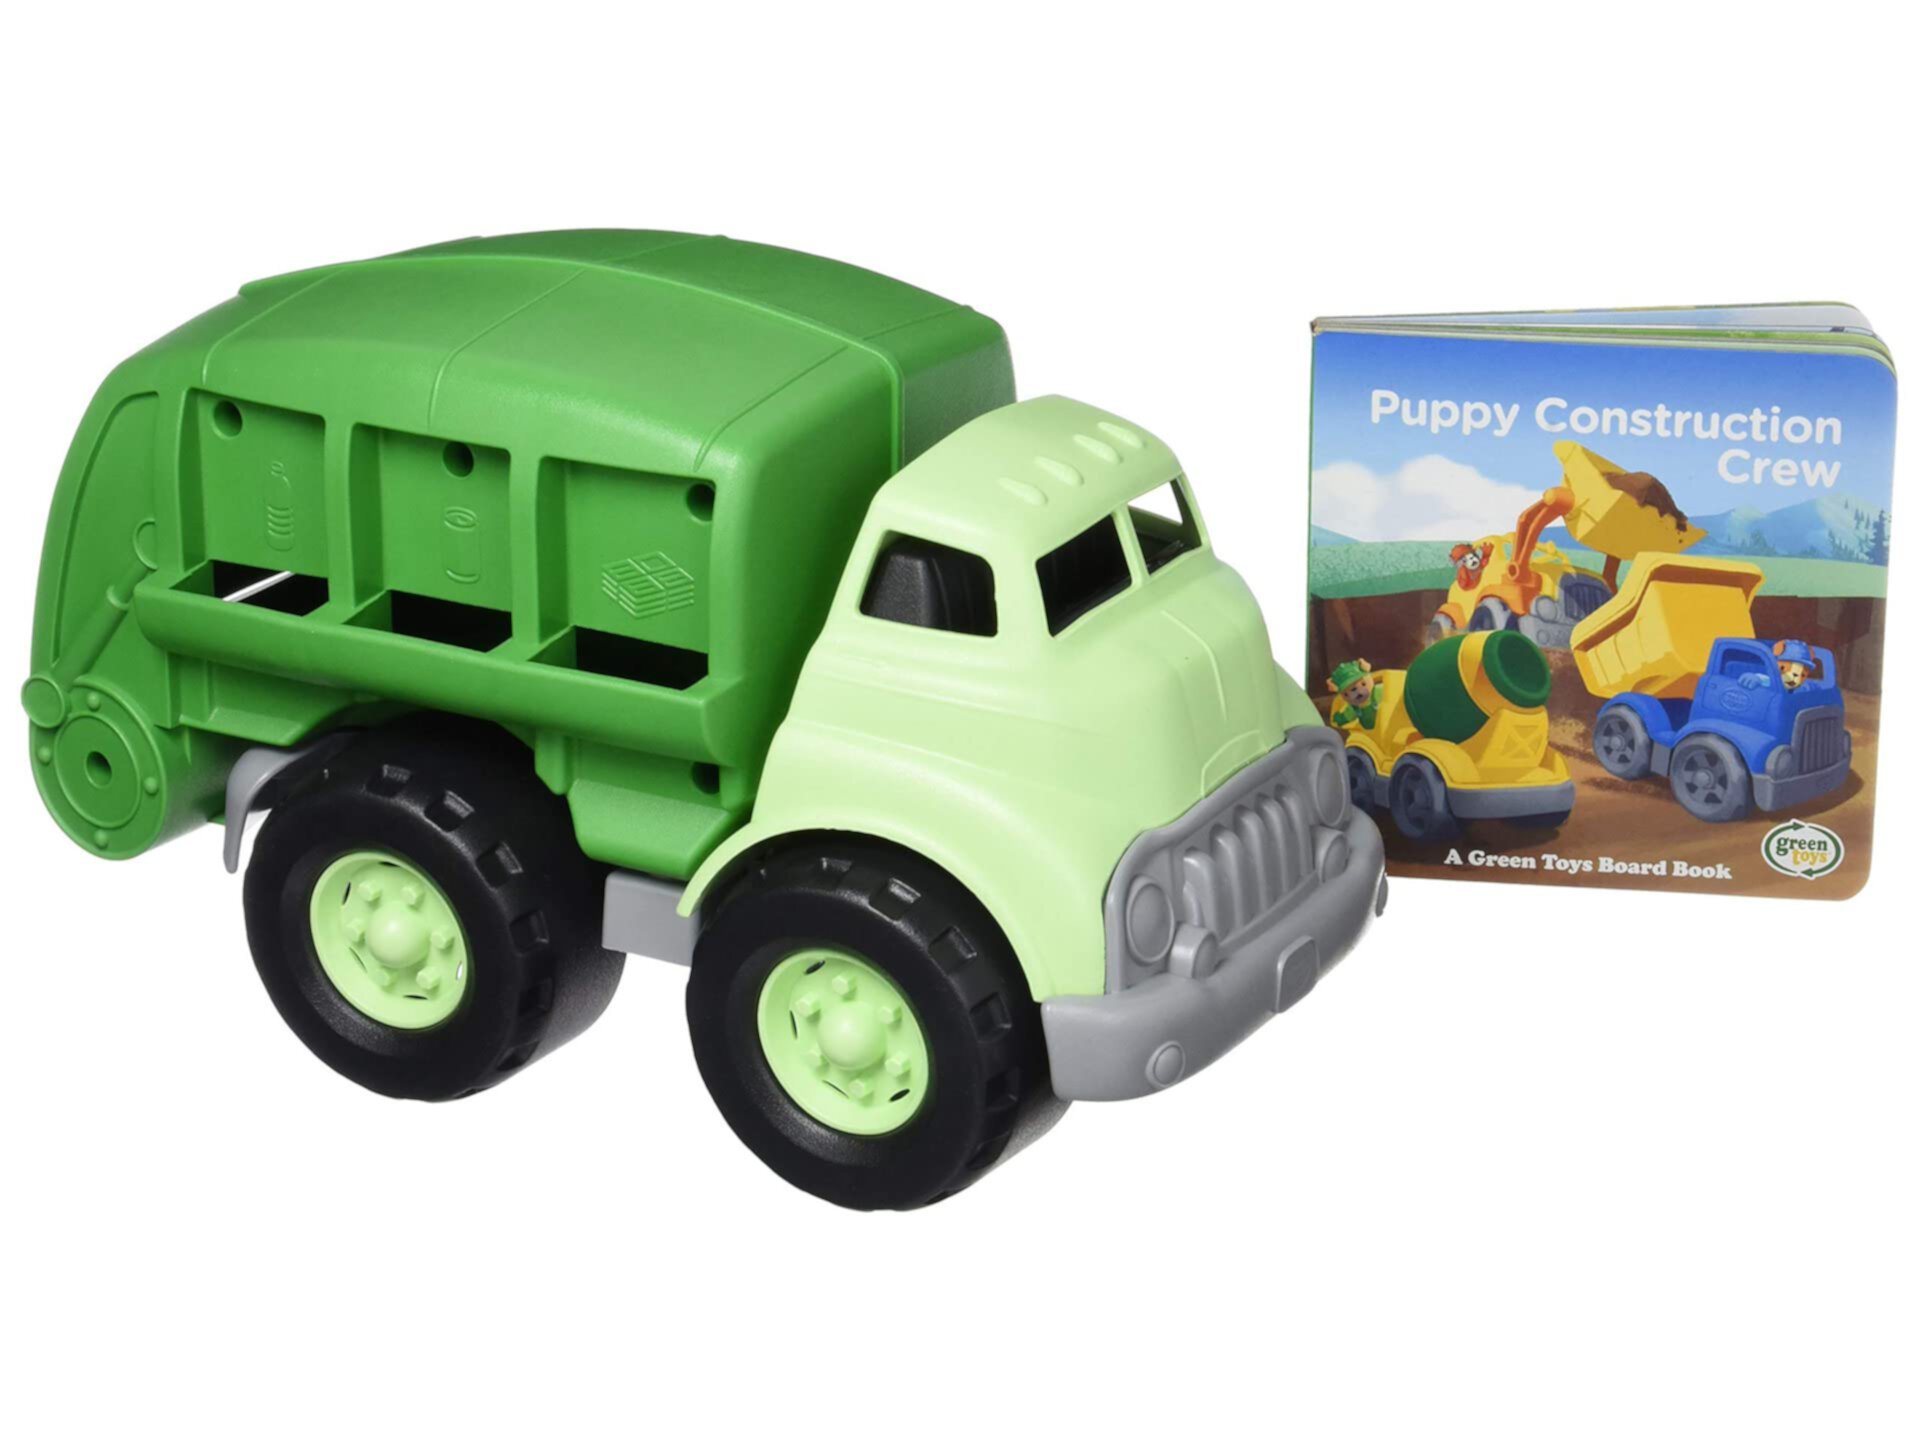 Green Toys Recycling Truck & Board Book, Green - Ролевые игры, Двигательные навыки, Чтение, Детский игрушечный автомобиль. Не содержит BPA, фталатов, ПВХ. Можно мыть в посудомоечной машине, переработанный пластик, сделано в США. Green Toys